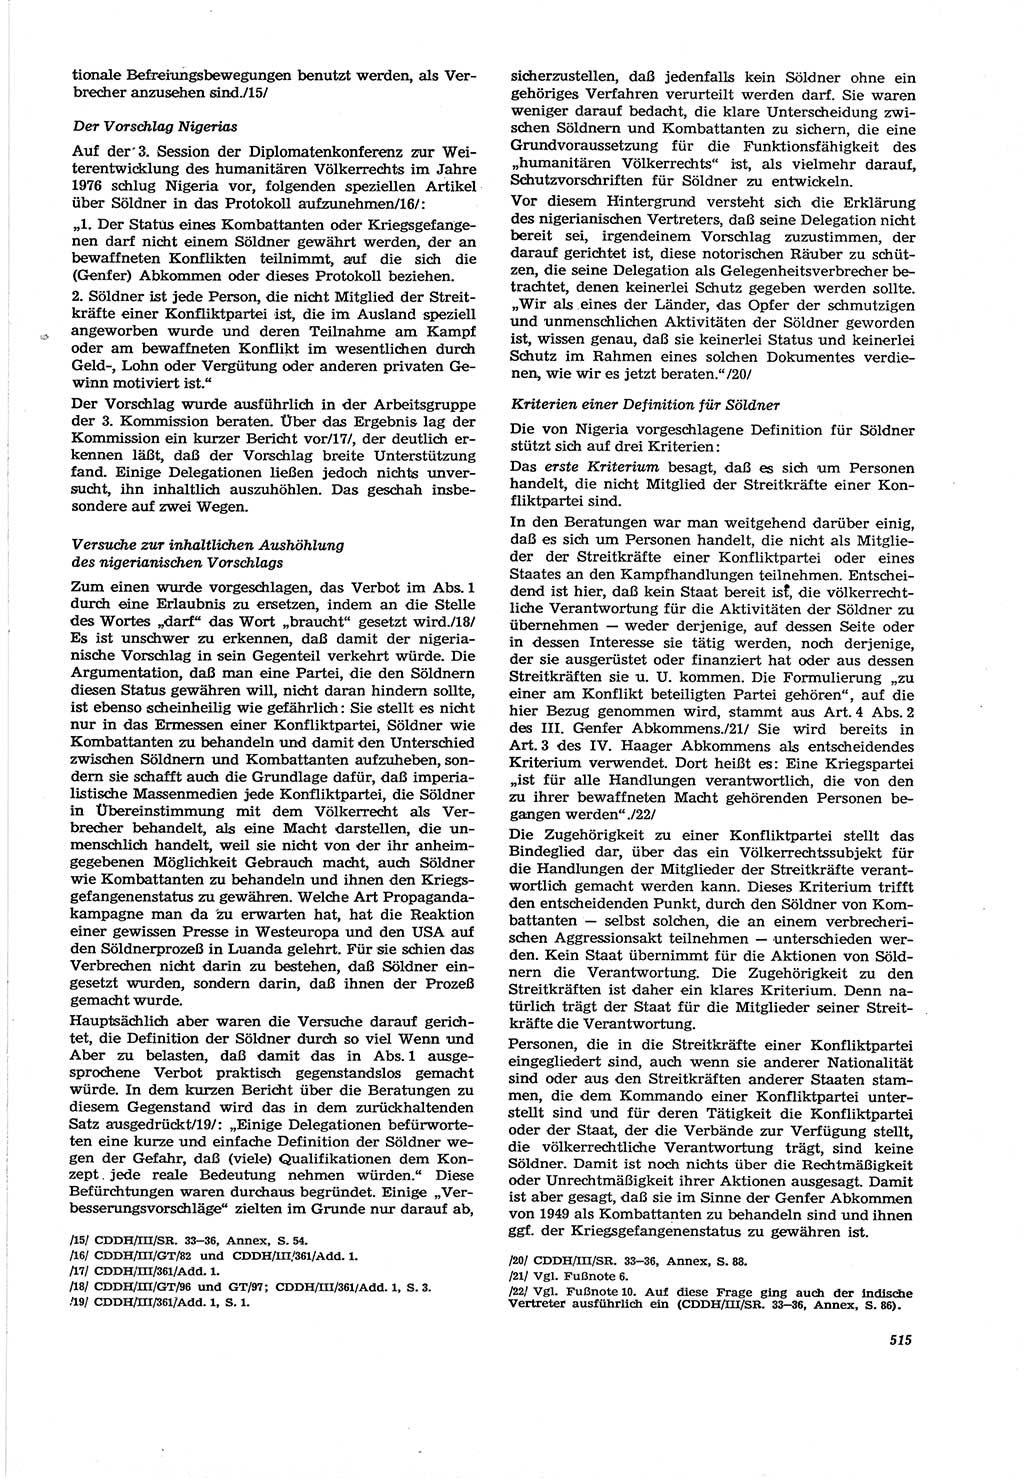 Neue Justiz (NJ), Zeitschrift für Recht und Rechtswissenschaft [Deutsche Demokratische Republik (DDR)], 30. Jahrgang 1976, Seite 515 (NJ DDR 1976, S. 515)